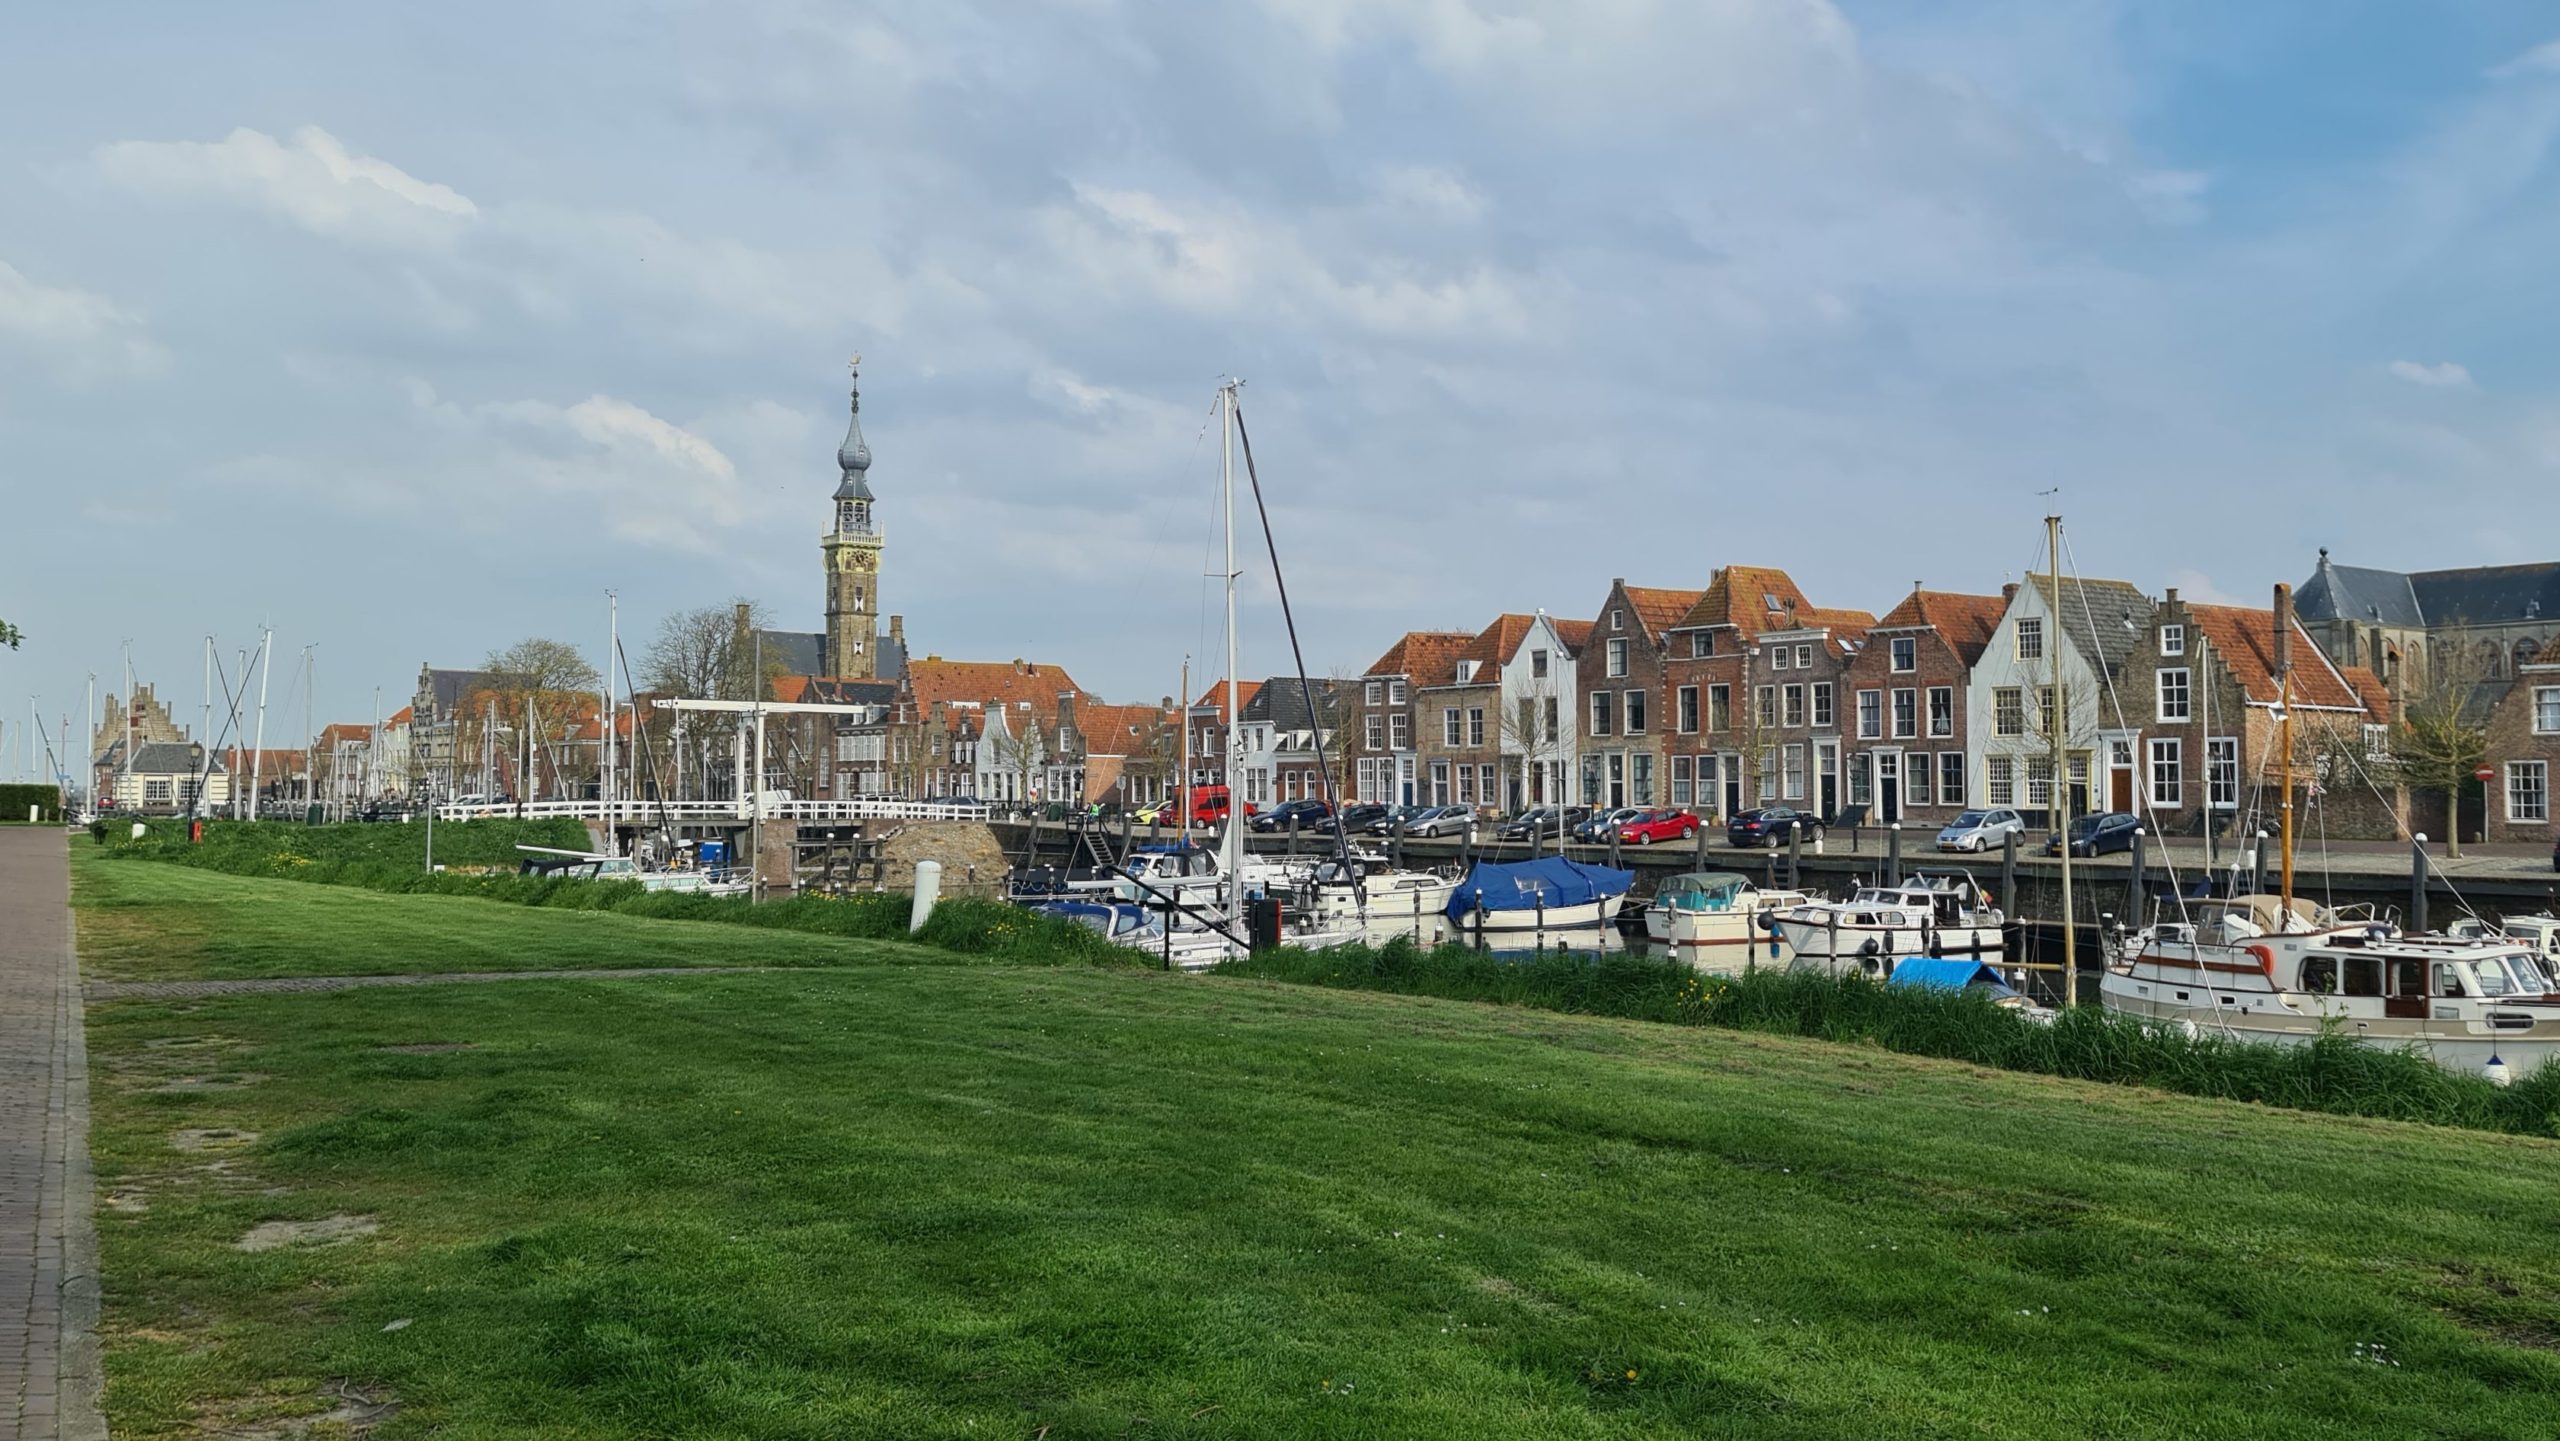 Veere est une ville qui mérite un détour lorsque vous visitez les Pays-Bas